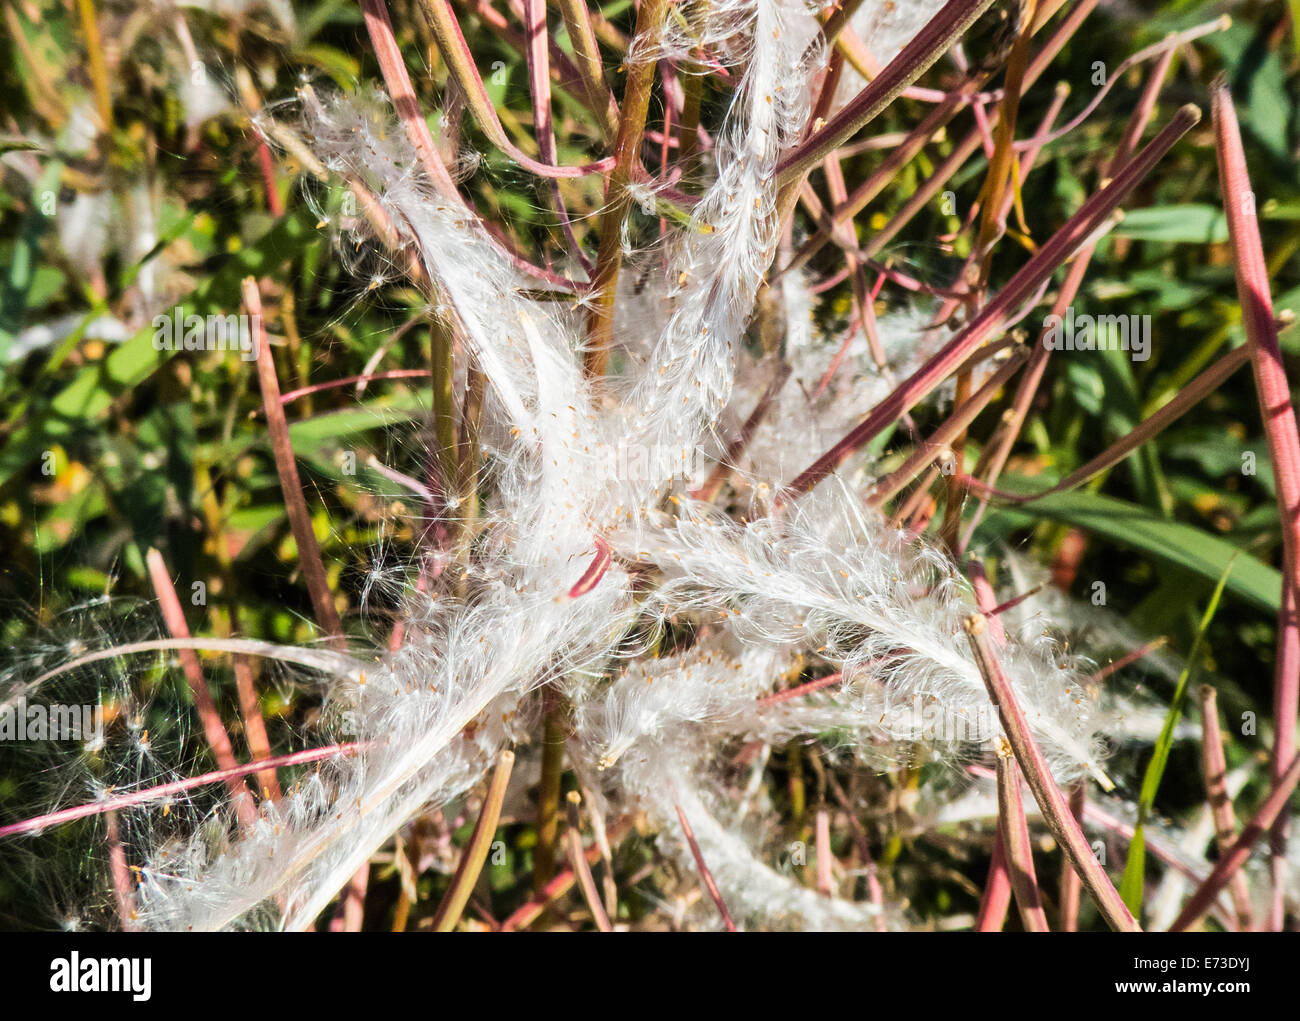 fireweed seeds, Epilobium sp. Stock Photo